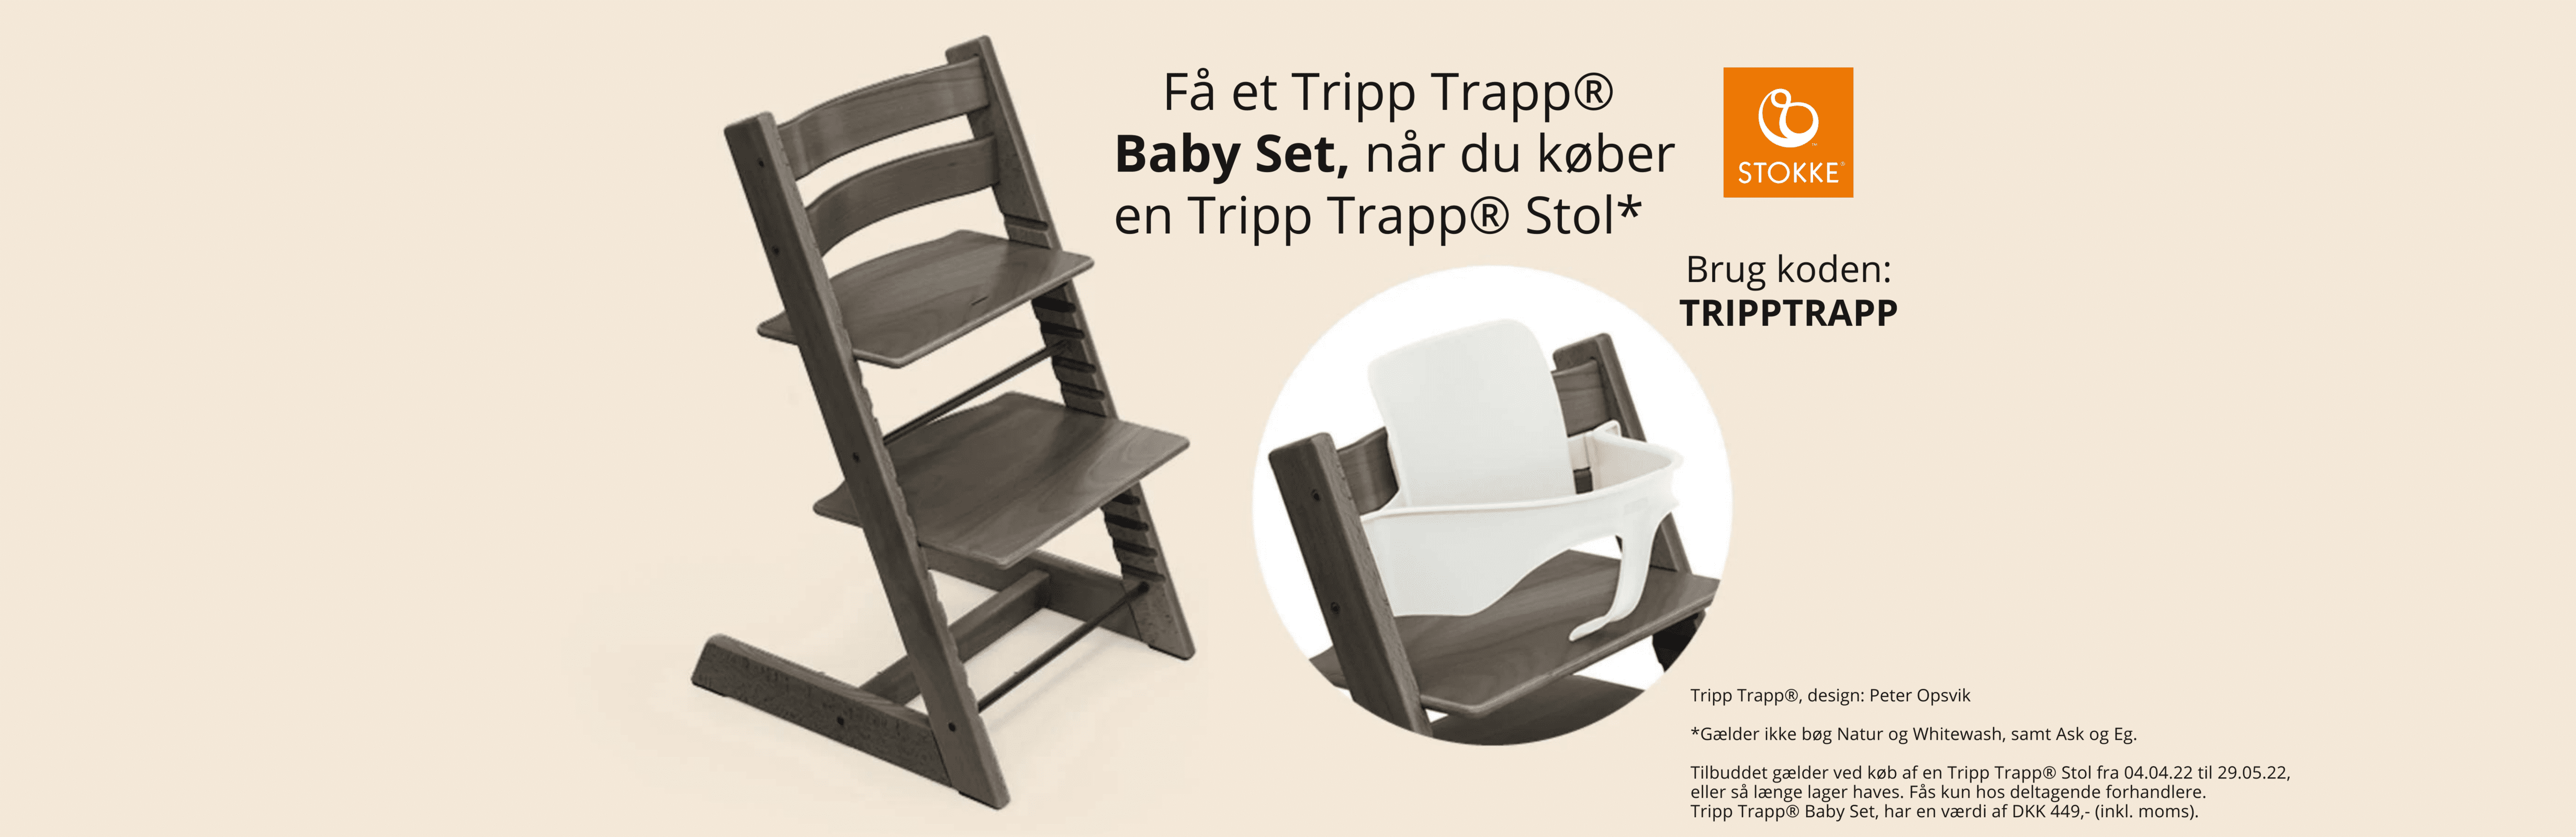 På Minierne.dk kan du lige nu købe en Stokke Tripp Trapp højstol og få et gratis Tripp Trapp baby set med i købet. Køb Tripp Trapp på Minierne.dk.